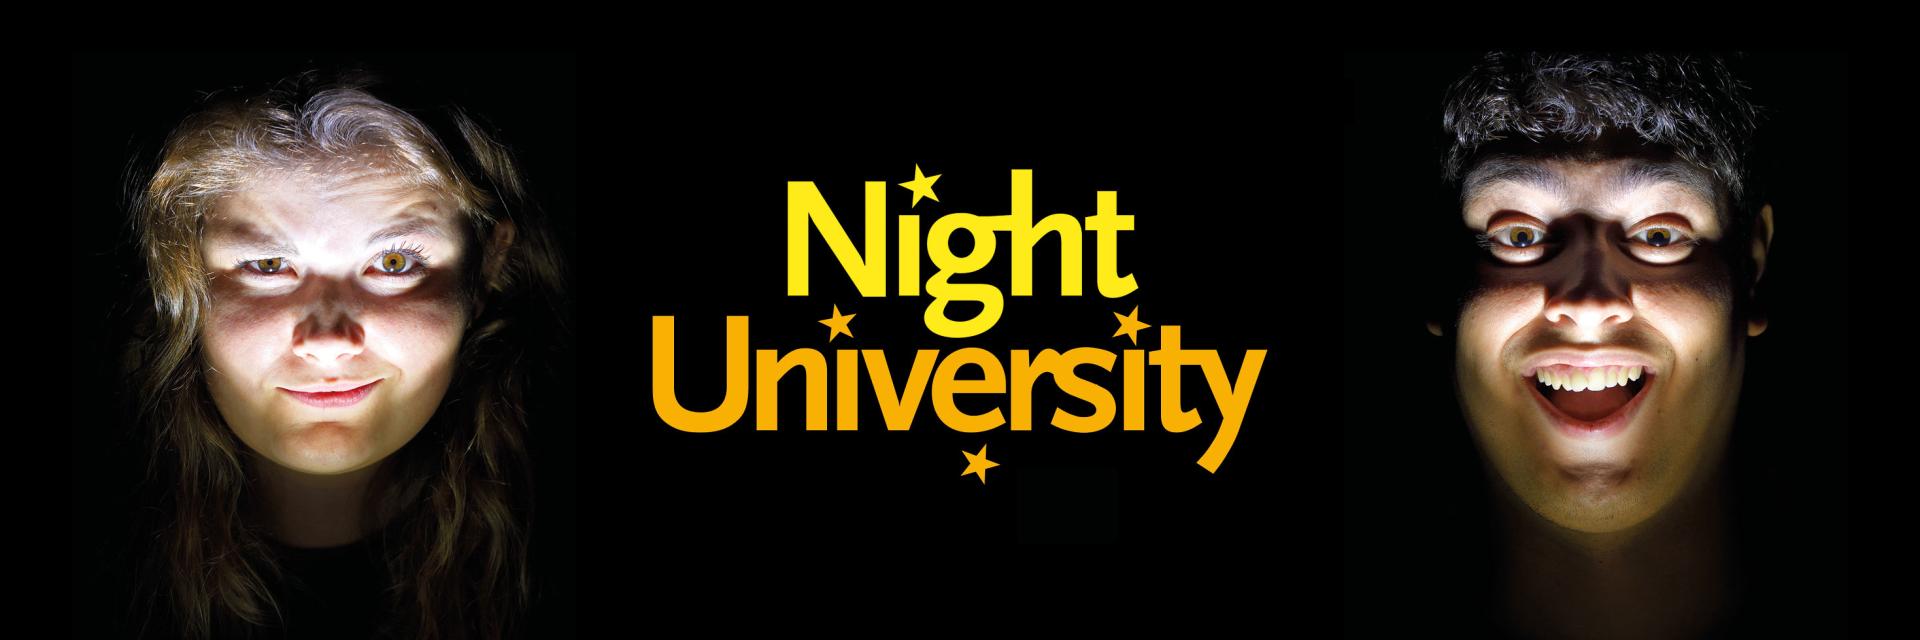 Night University 2019 algemeen